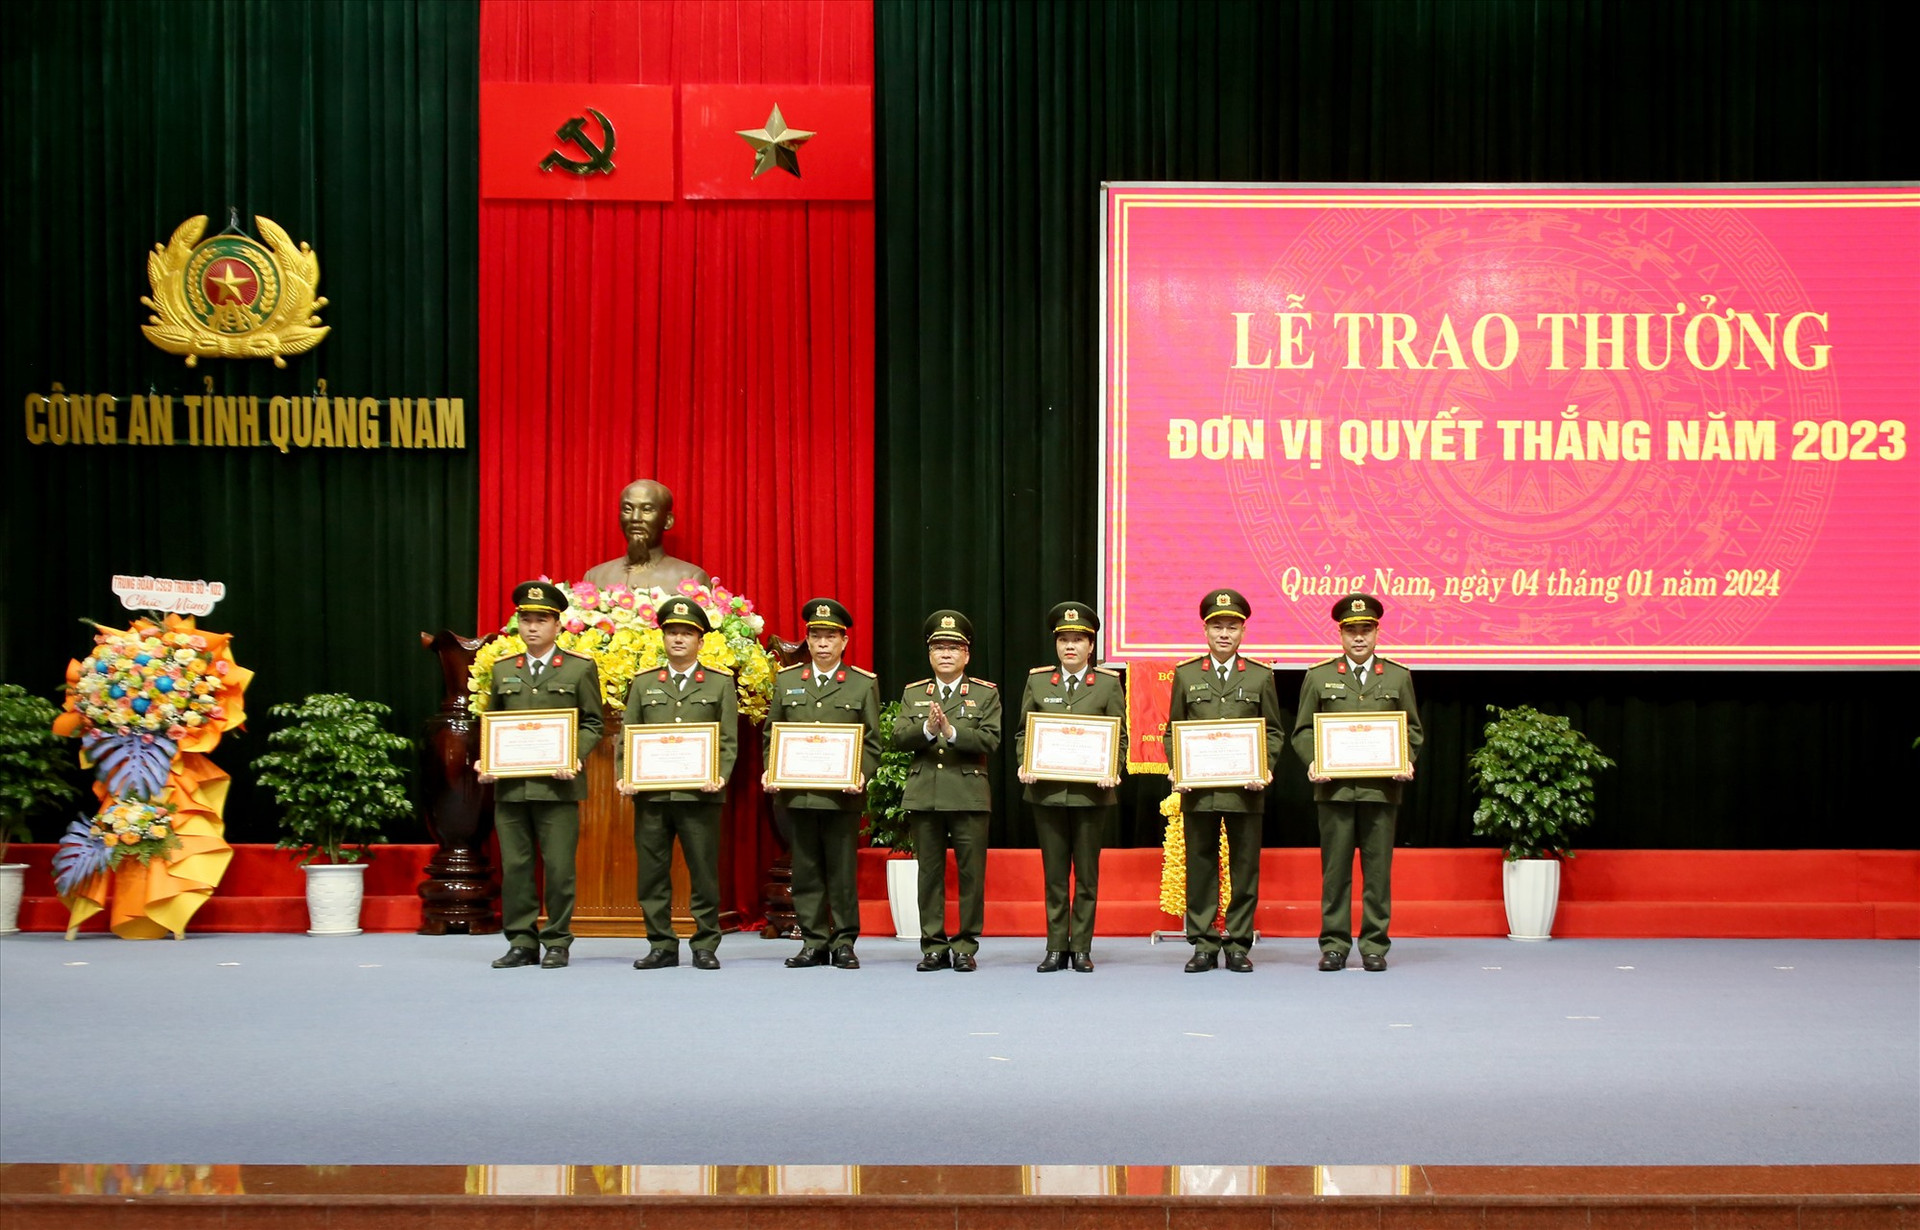 Thiếu tướng Nguyễn Đức Dũng khen thưởng đơn vị Quyết thắng năm 2023 cho các đơn vị có thành tích xuất sắc công tác công an năm 2023. Ảnh: T.C